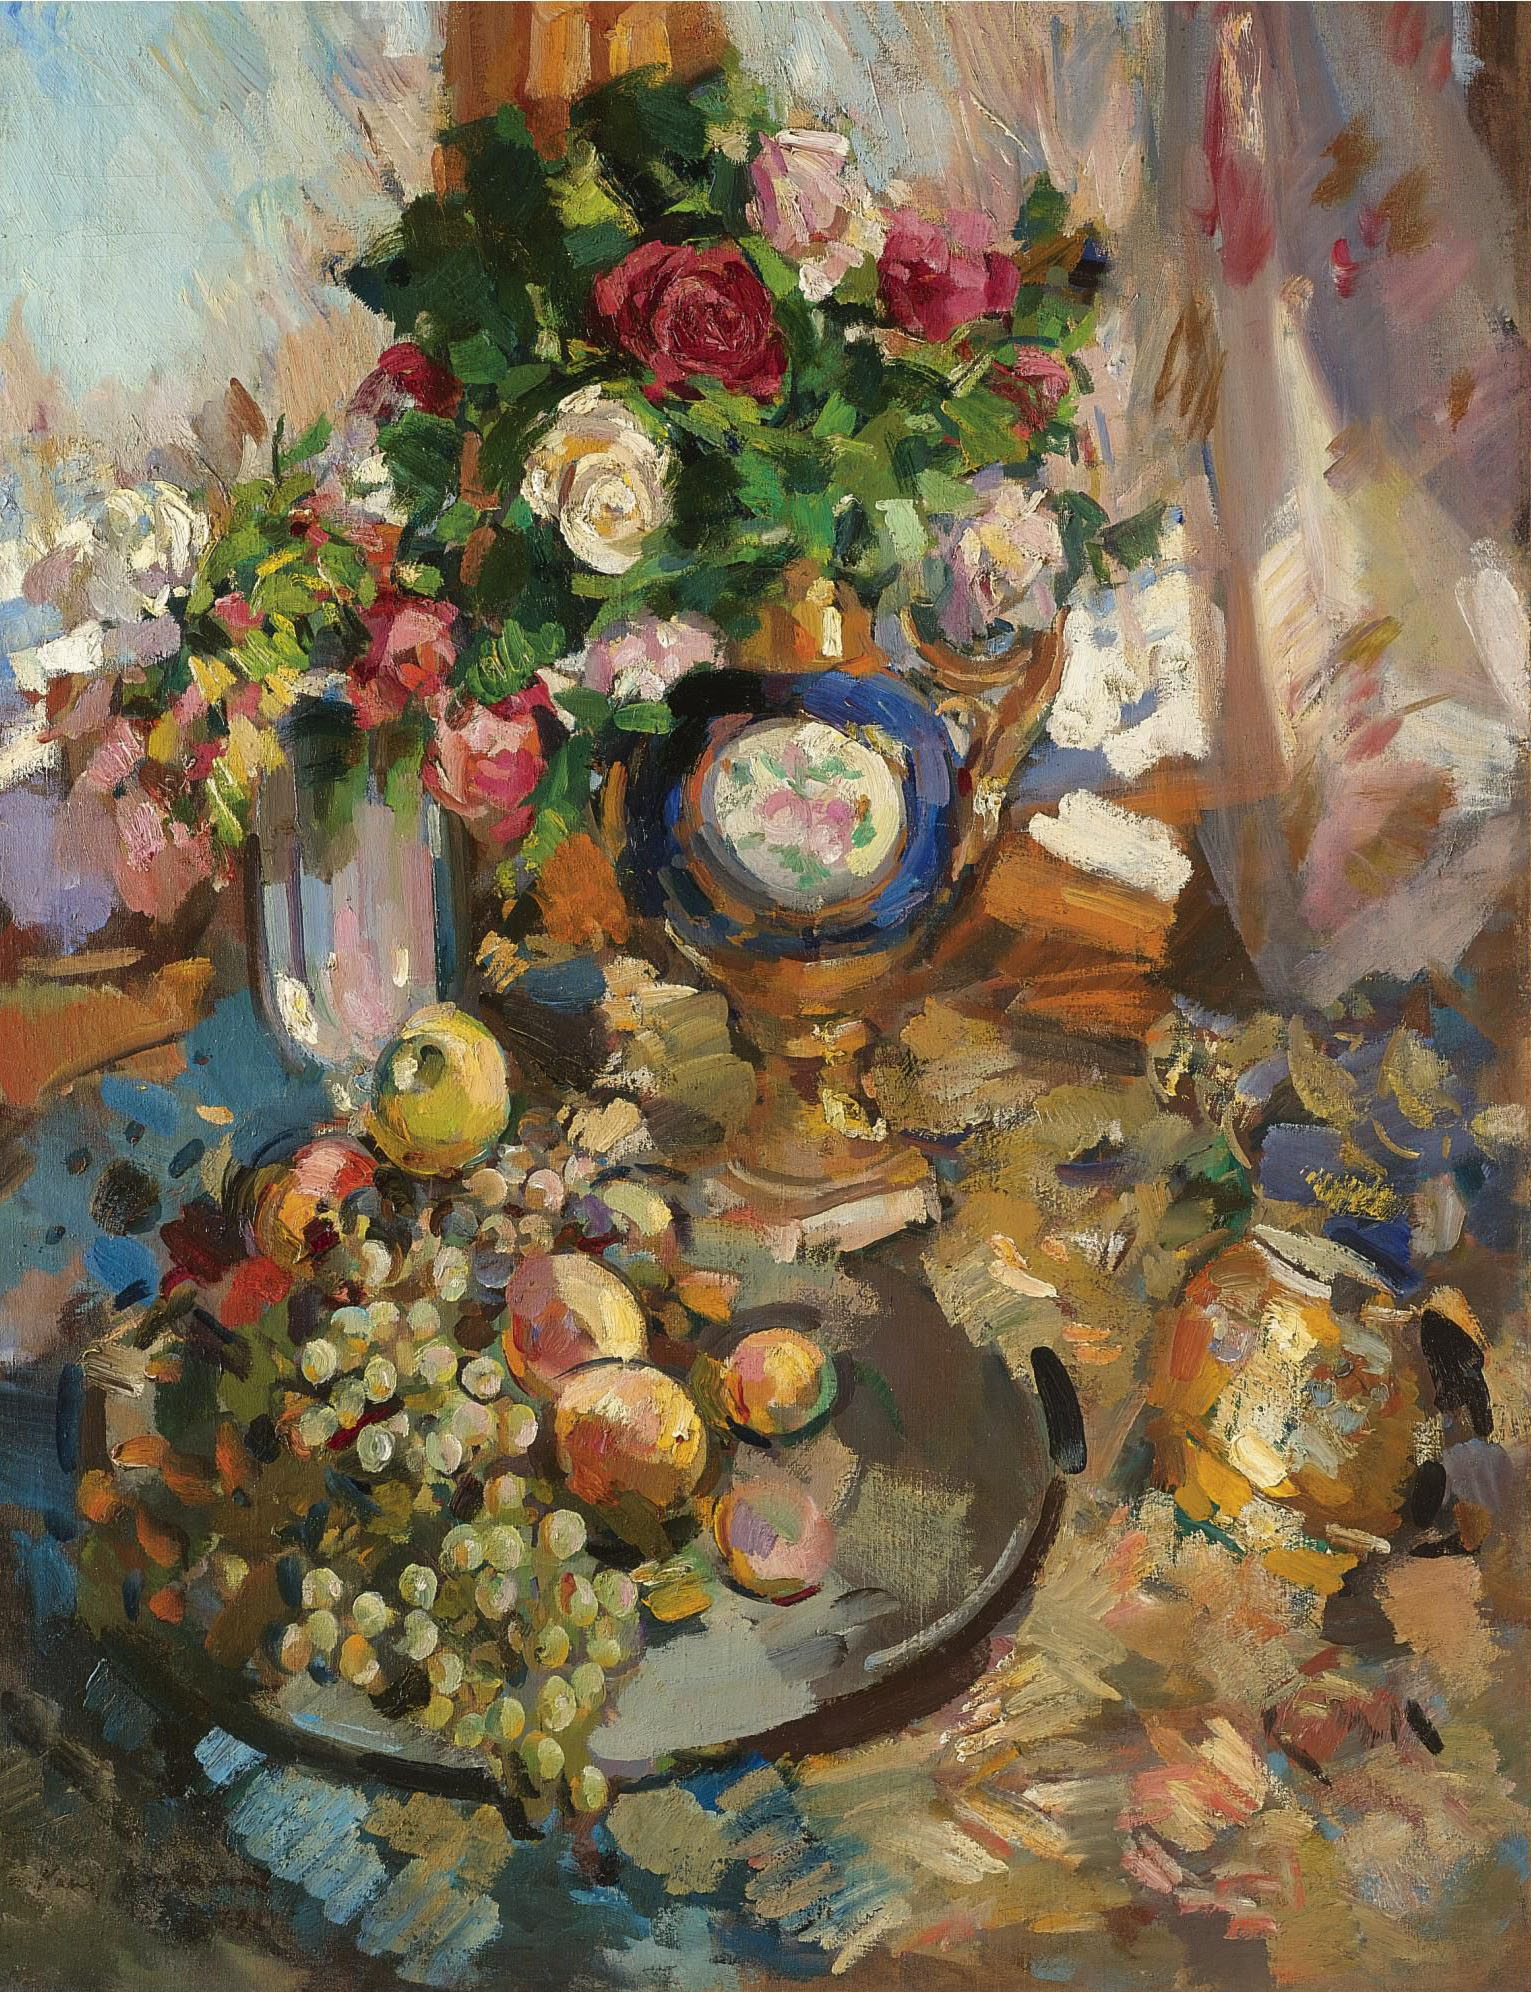 Коровин К.. Натюрморт с розами и фруктами. 1921